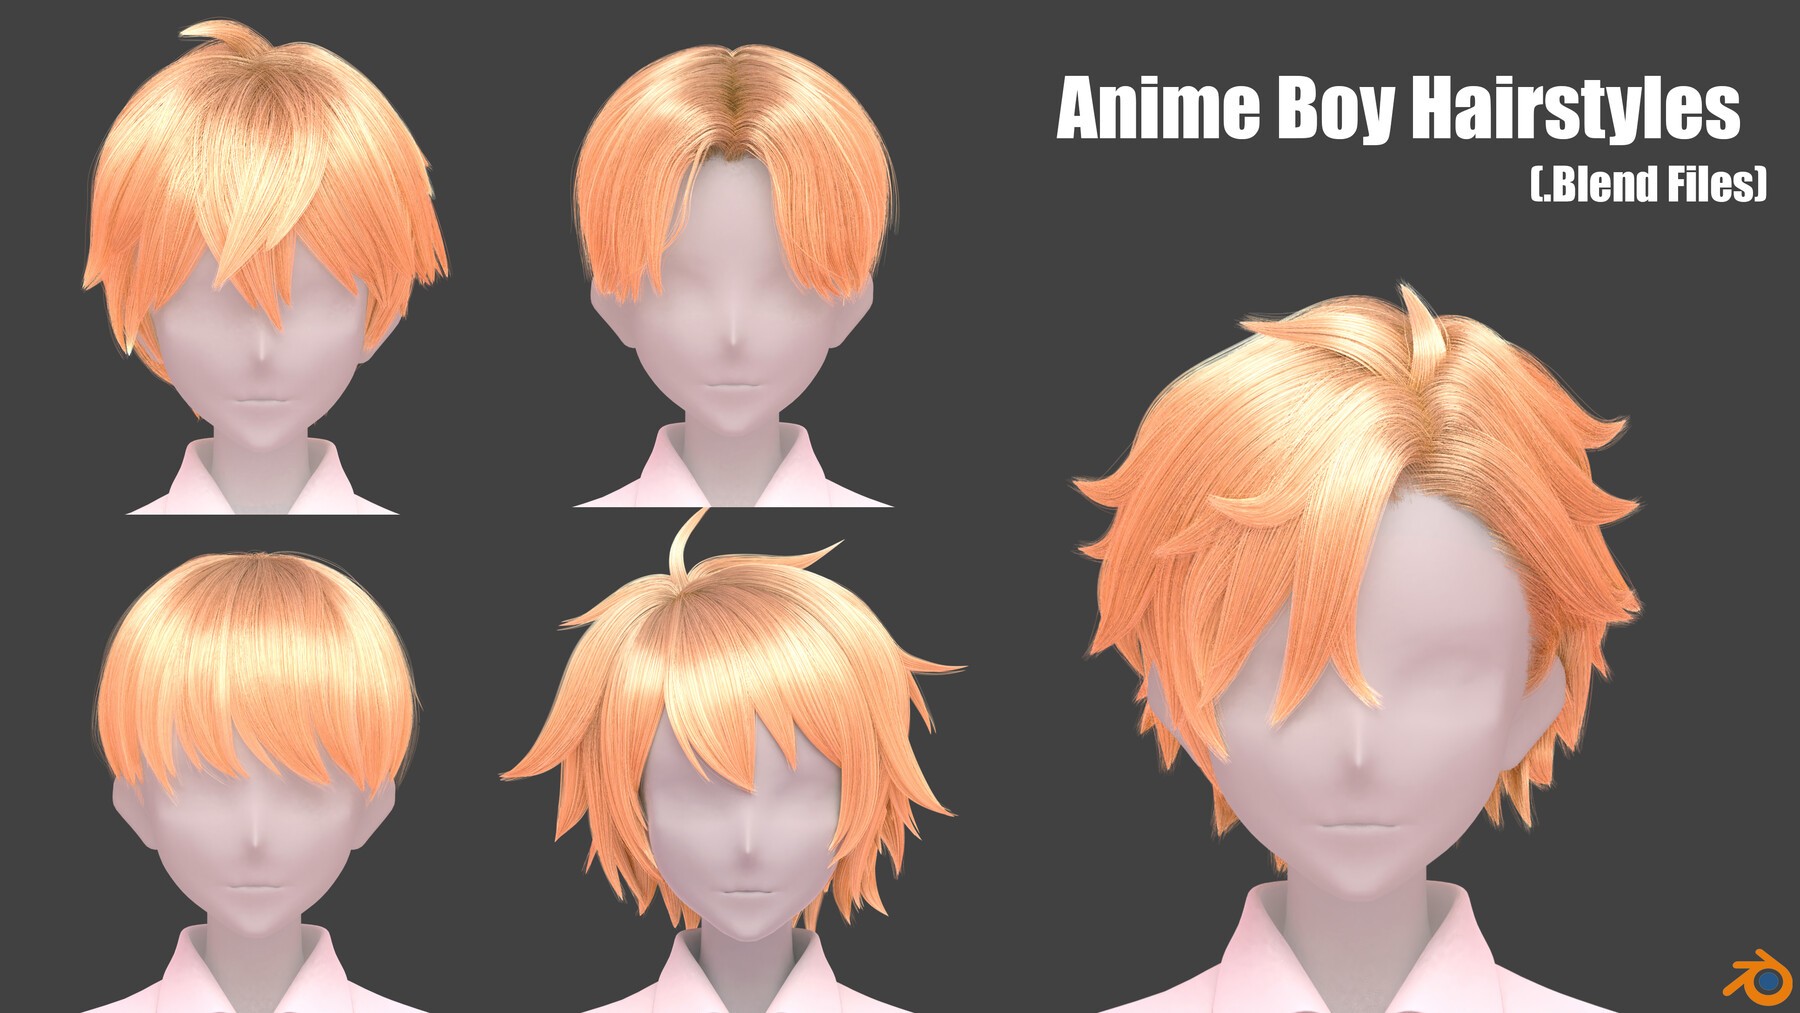 Top 15 Best Anime Boys Hairstyles Ranked  MyAnimeGuru